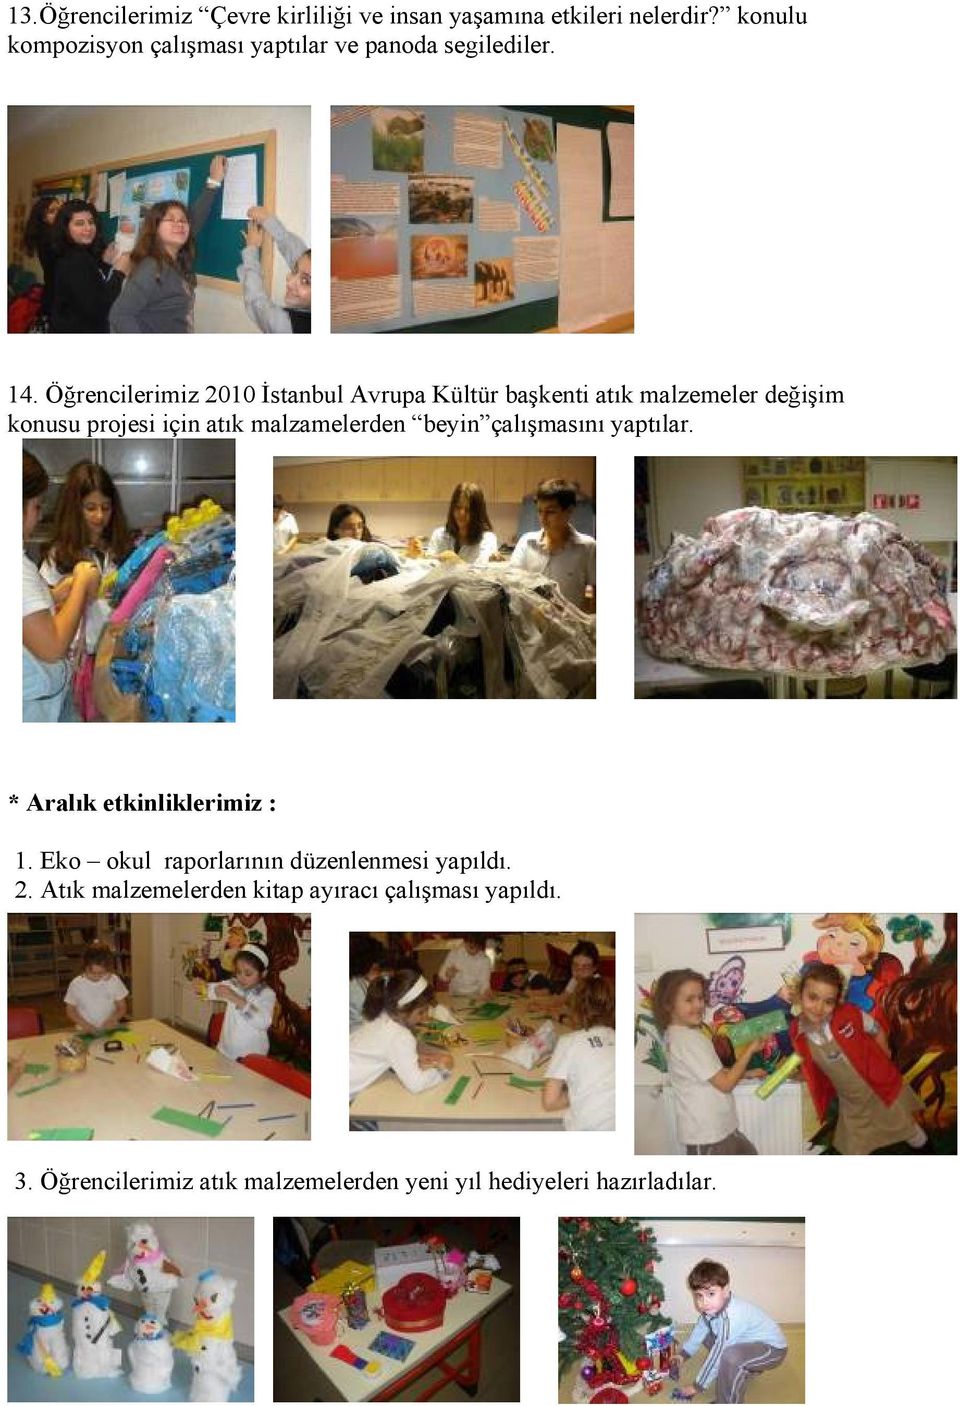 Öğrencilerimiz 2010 İstanbul Avrupa Kültür başkenti atık malzemeler değişim konusu projesi için atık malzamelerden